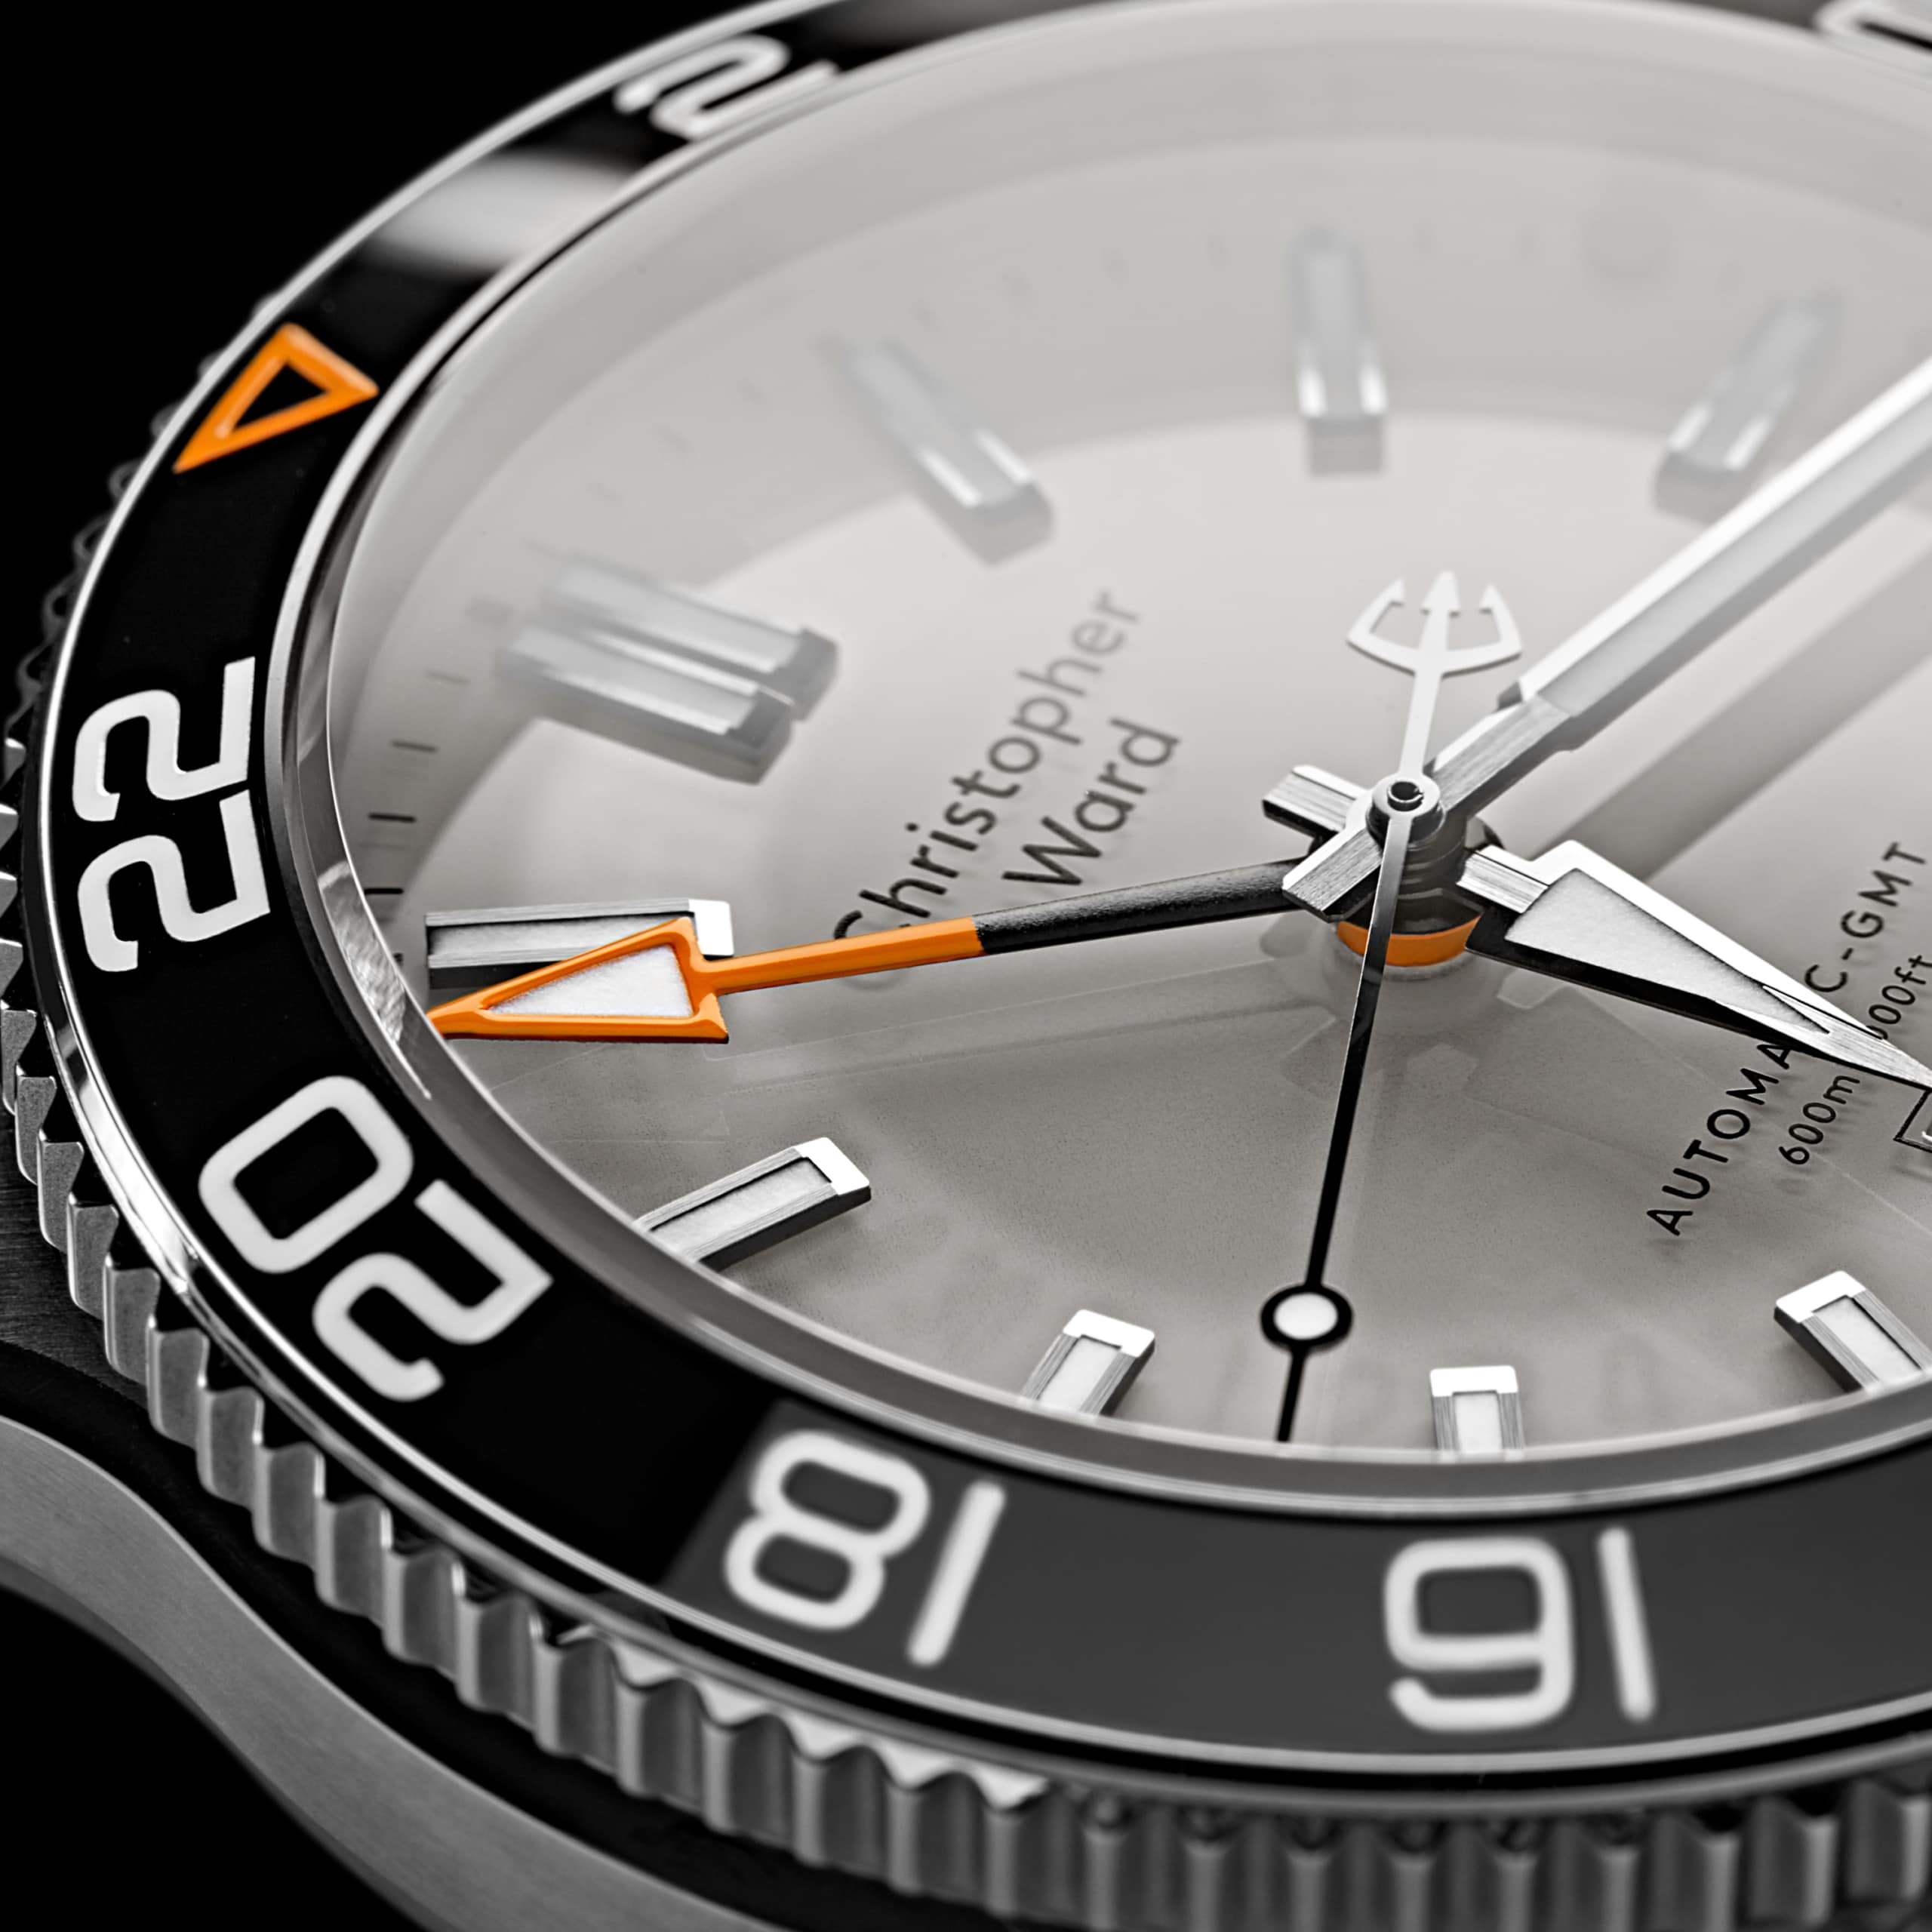 What is my Jules Jurgensen #4983 watch worth? - Quora